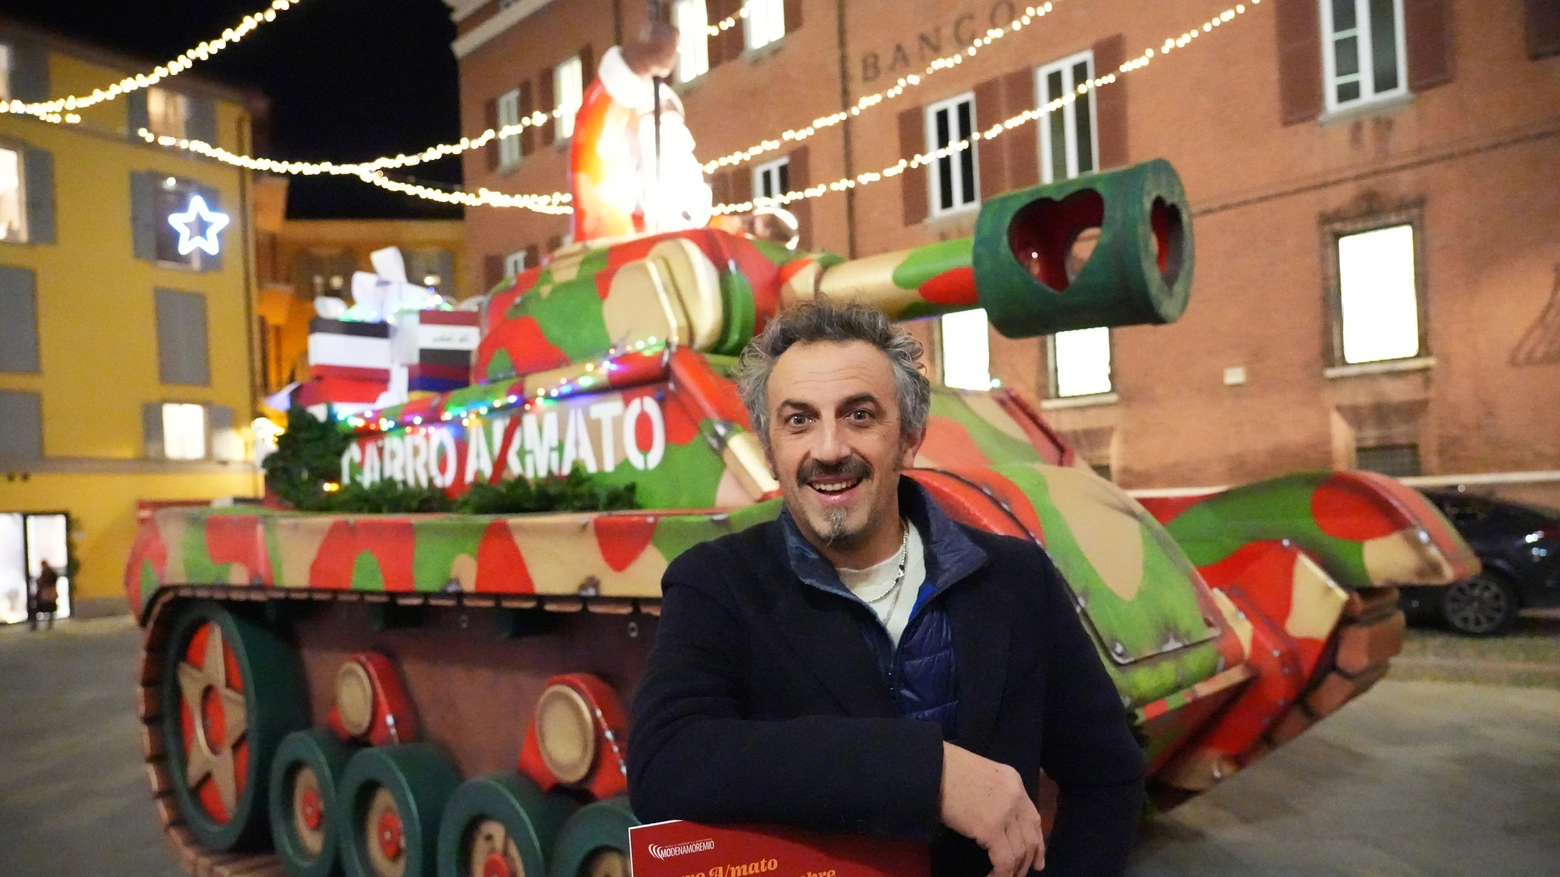 Il carro 'amato' e l'autore Lorenzo Lunati in piazza XX Settembre